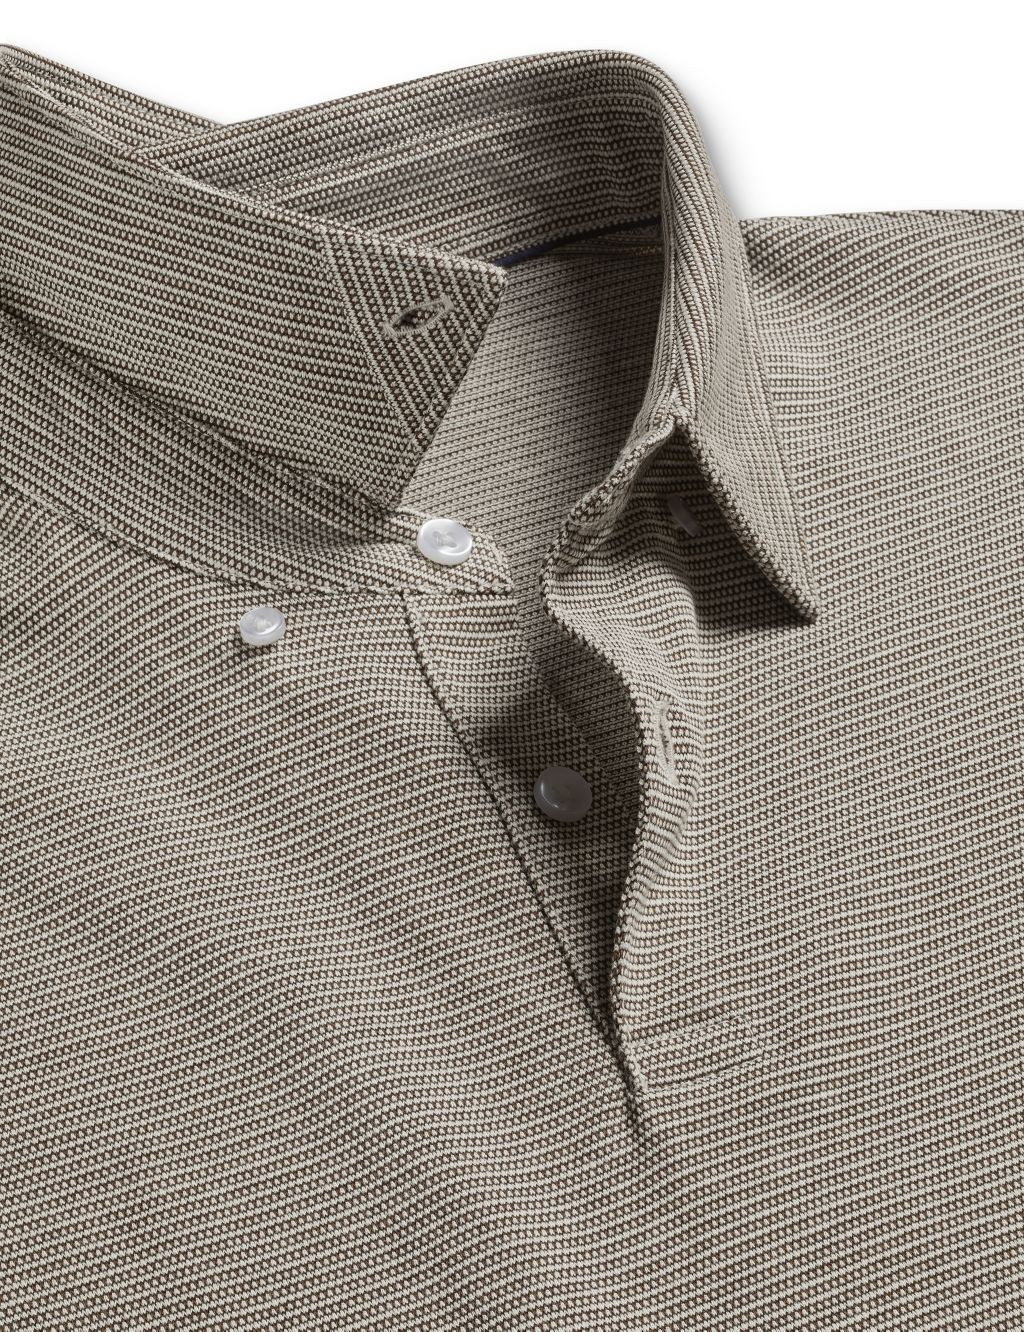 Pure Cotton Jacquard Polo Shirt image 4